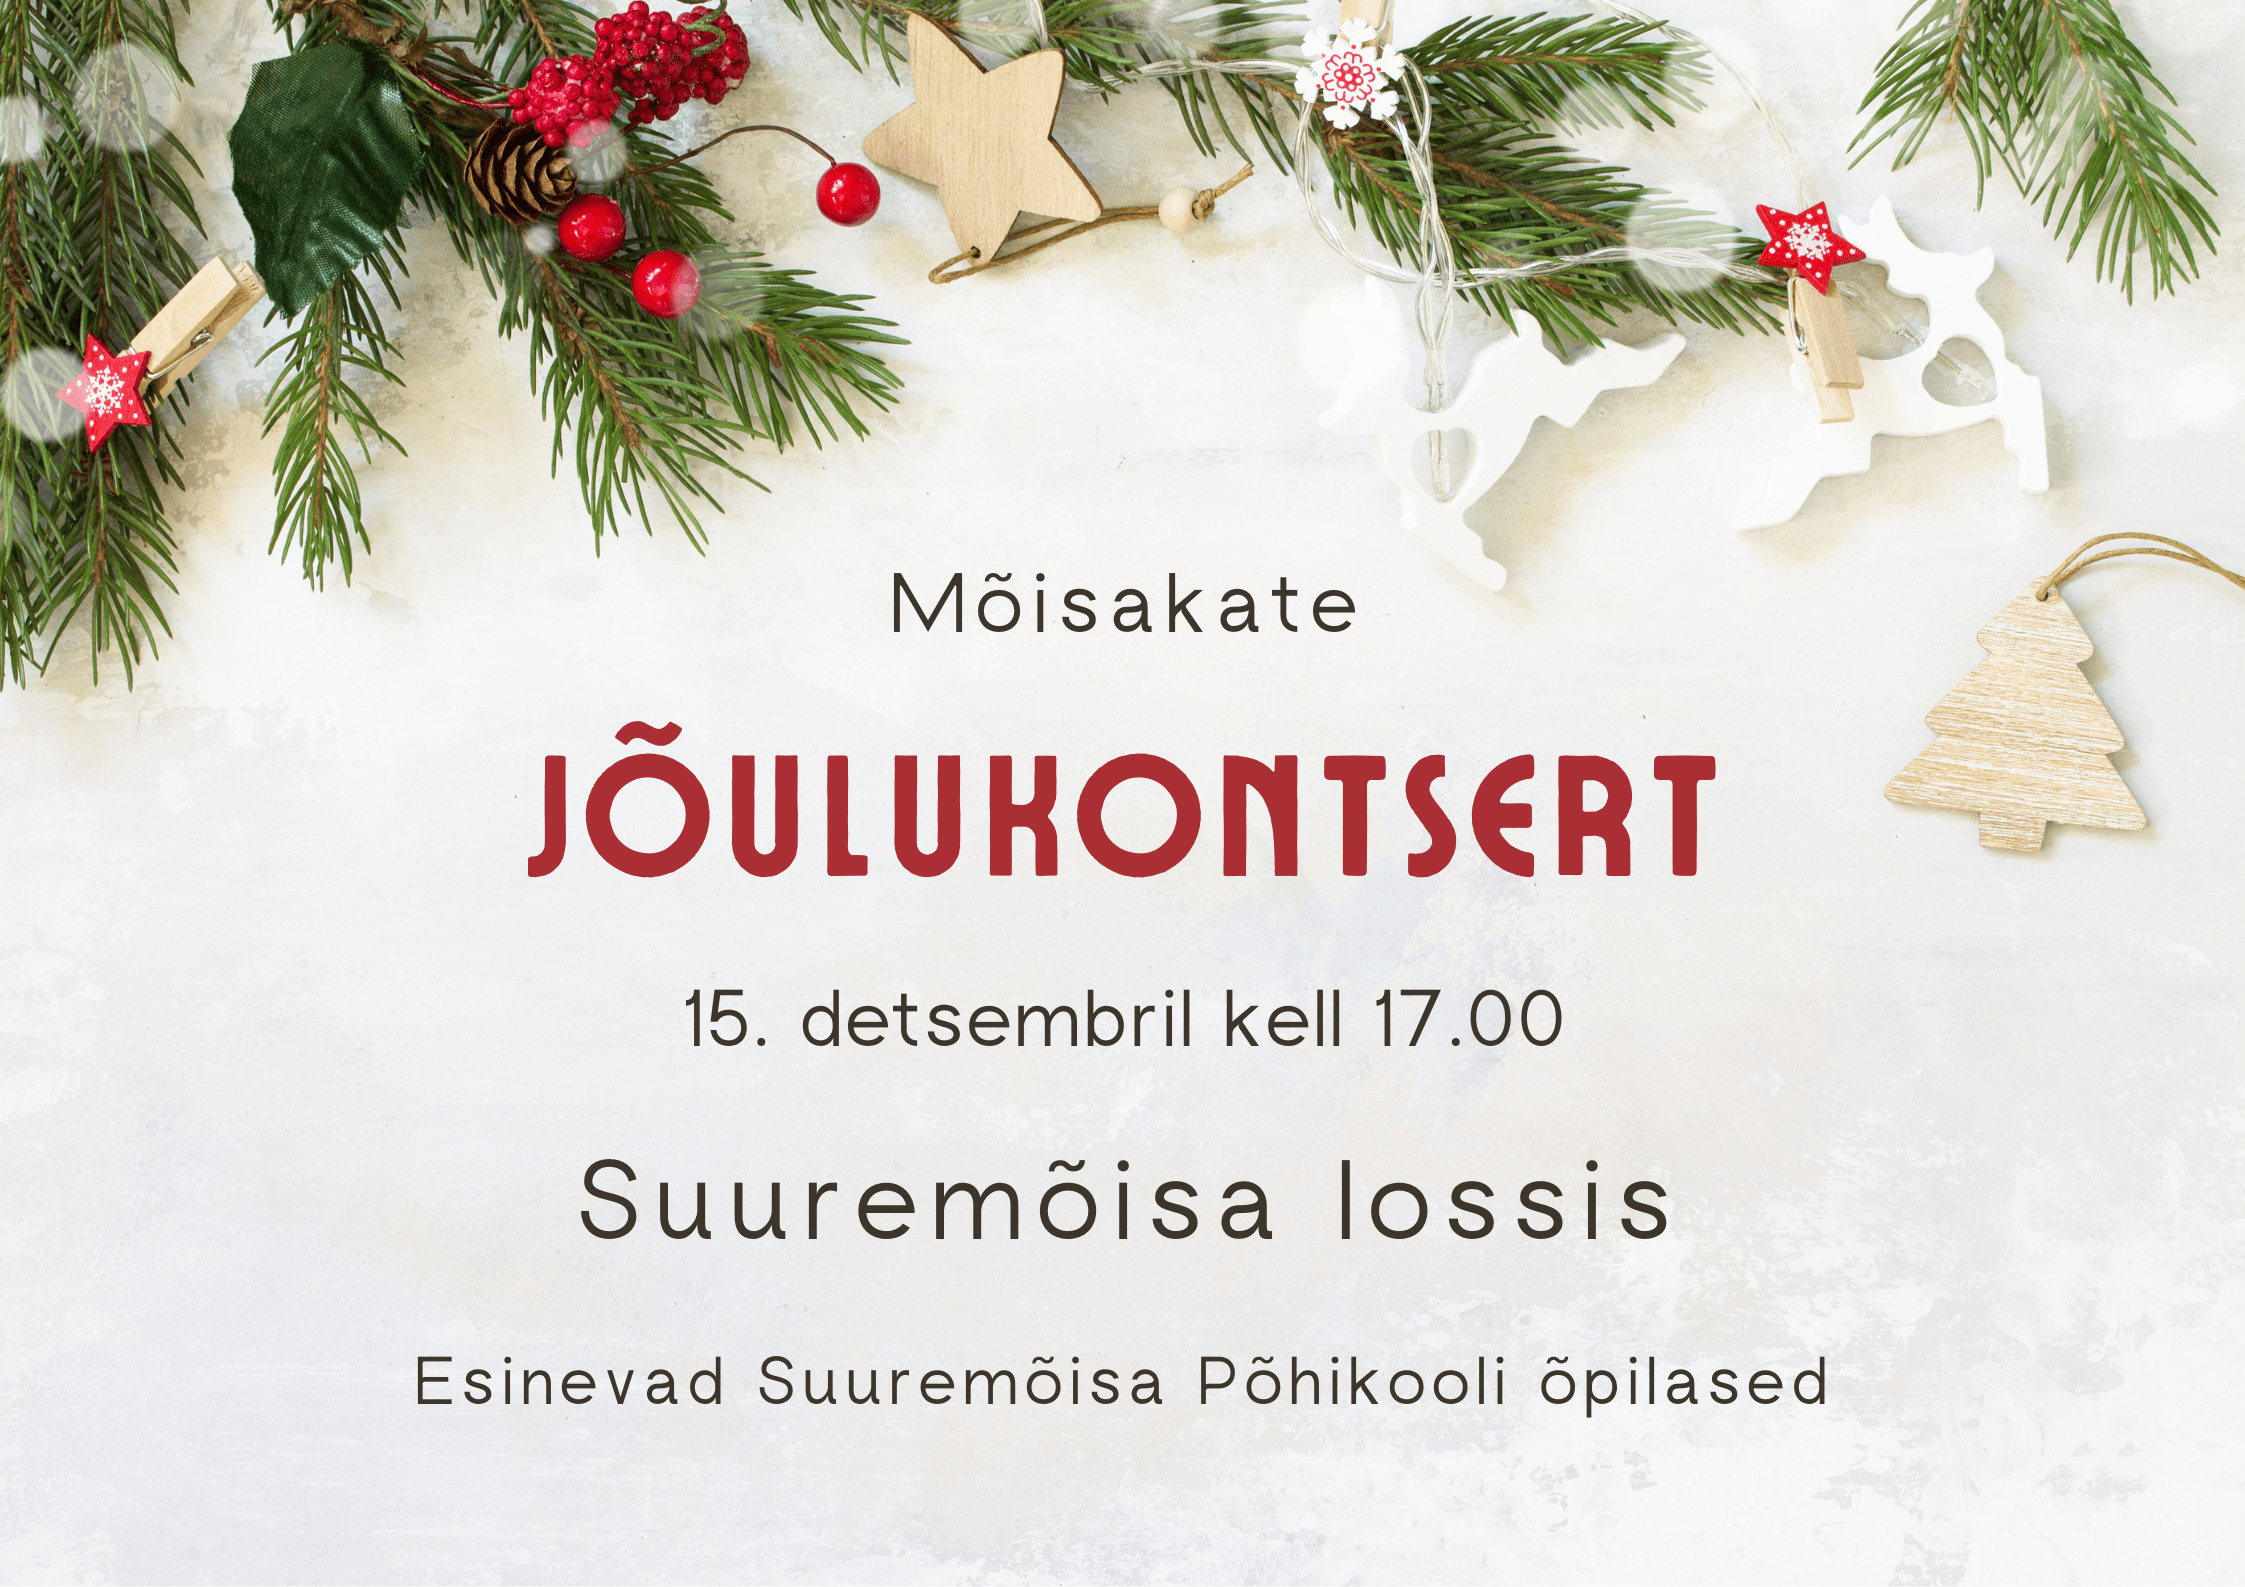 moisakate_joulukontsert.png